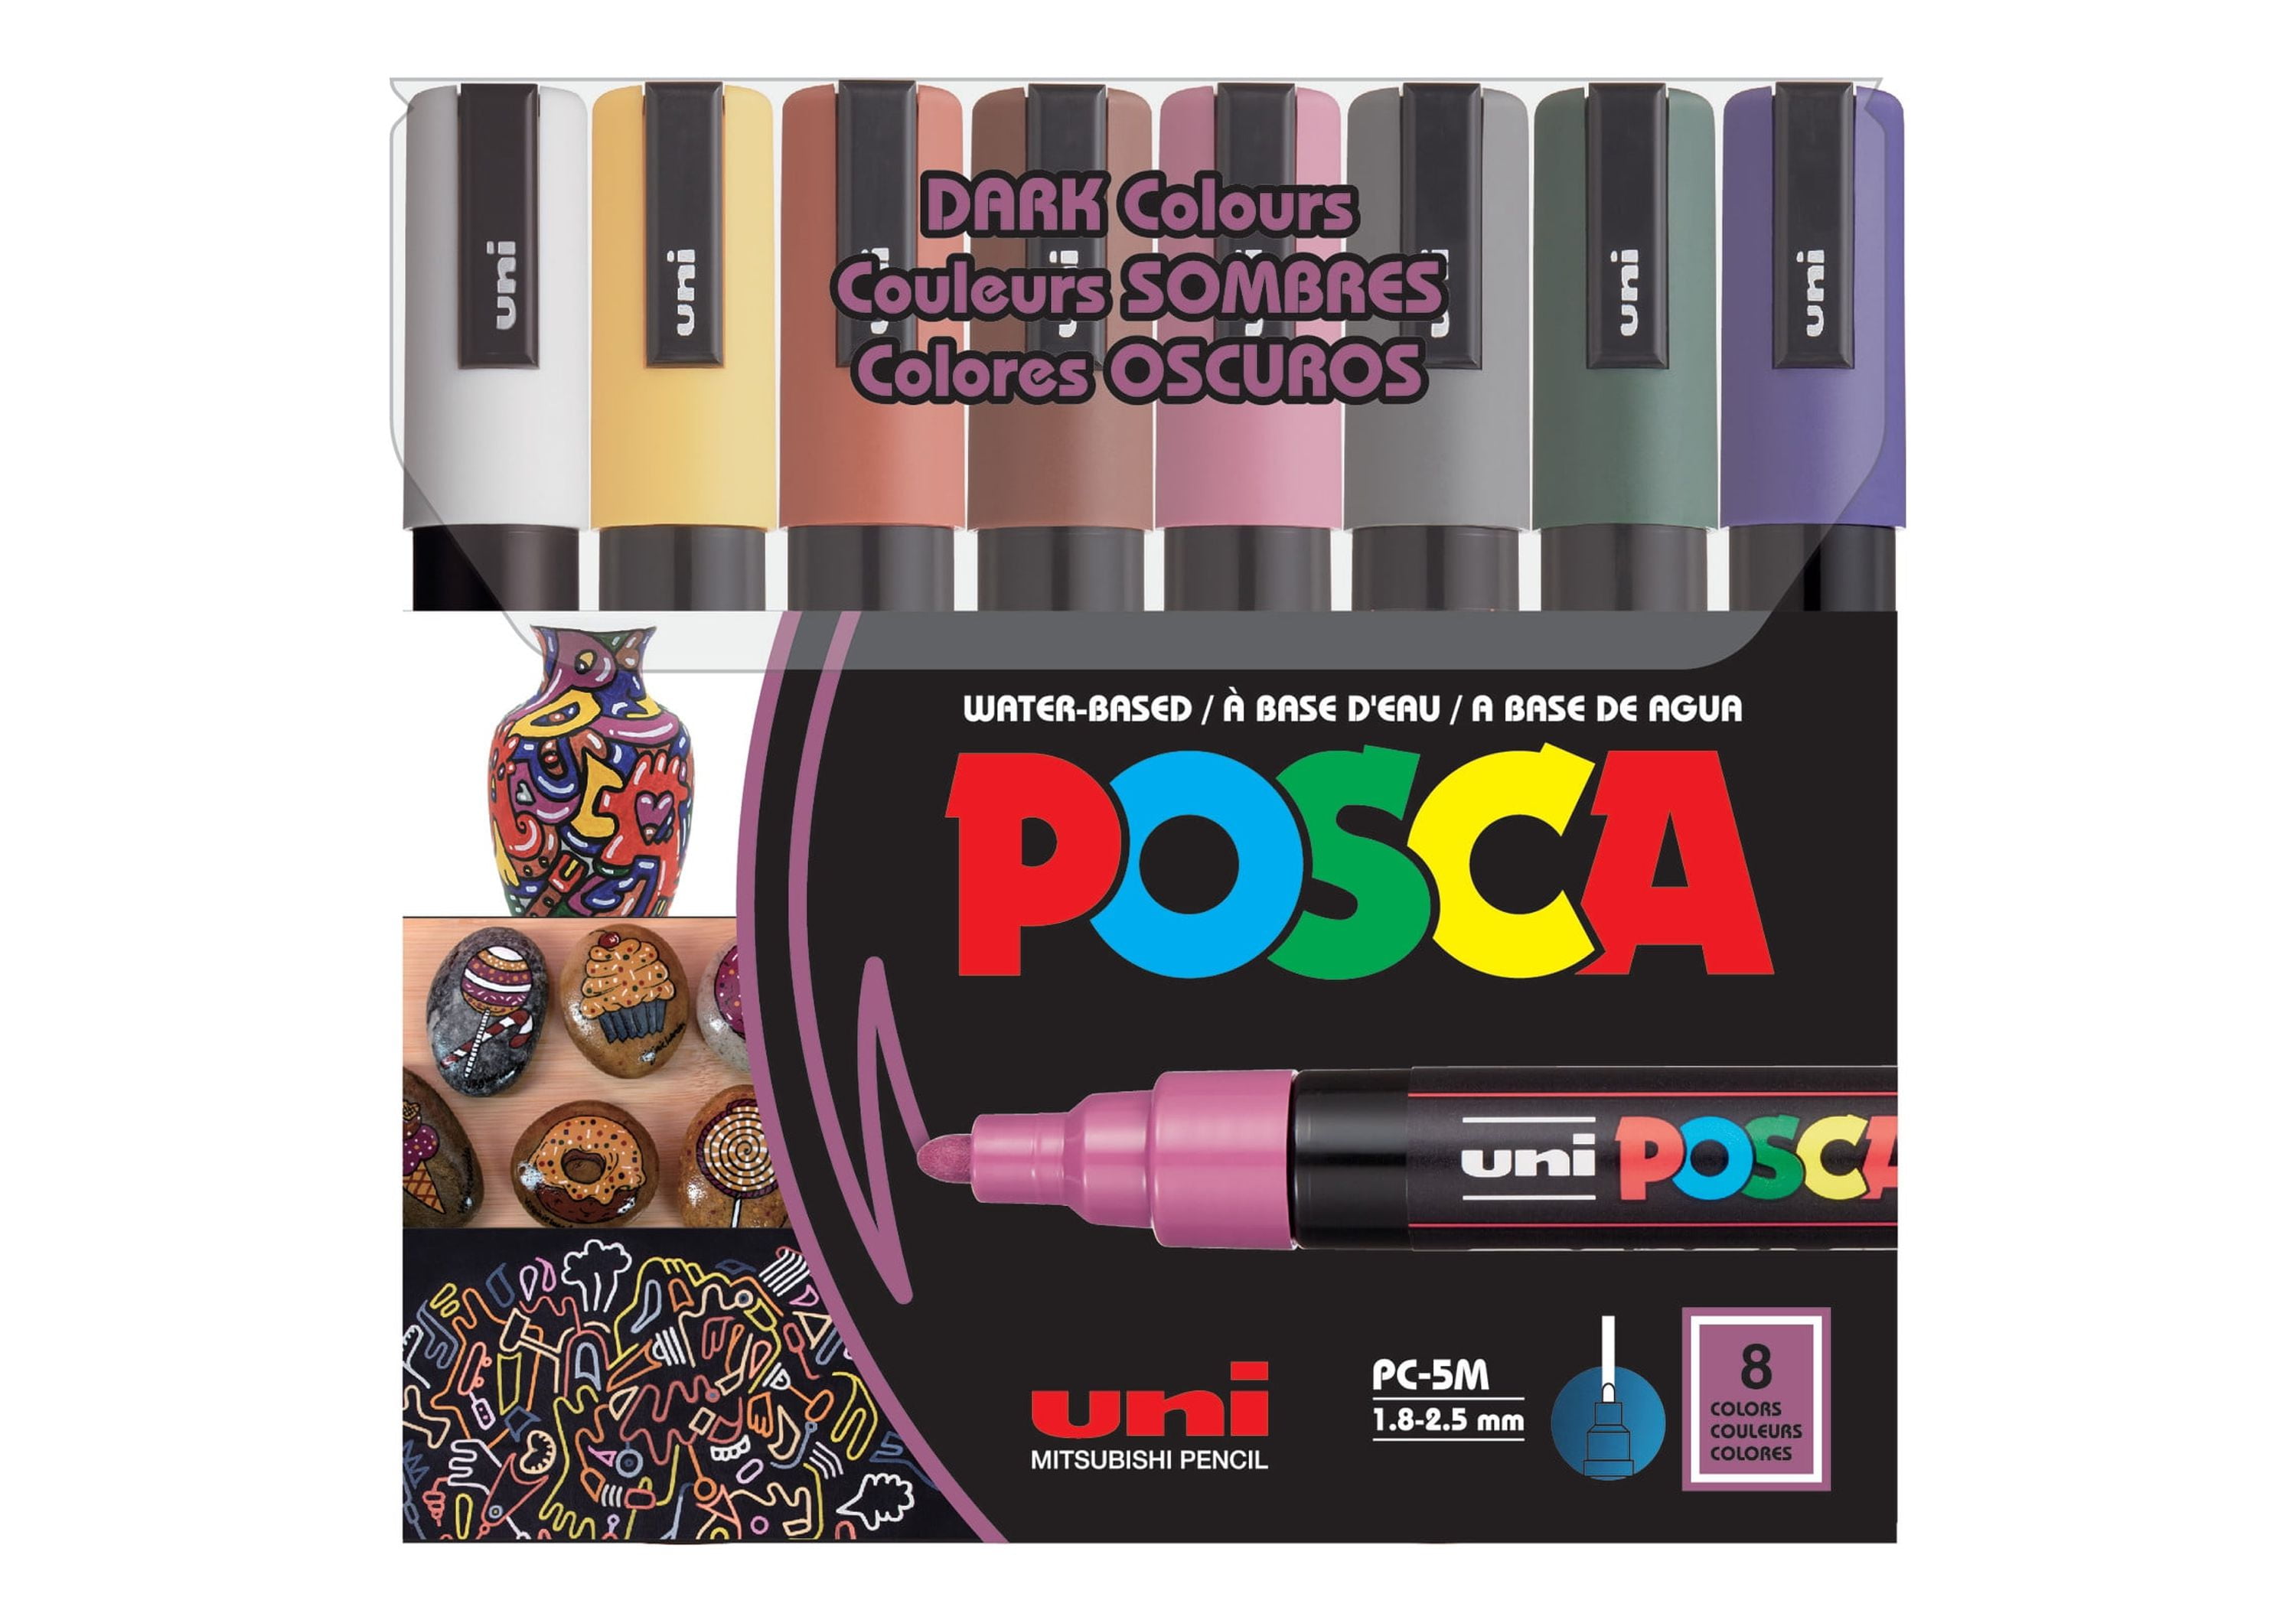  posca 8-Color Paint Marker Set, PC-5M Medium & Pacon